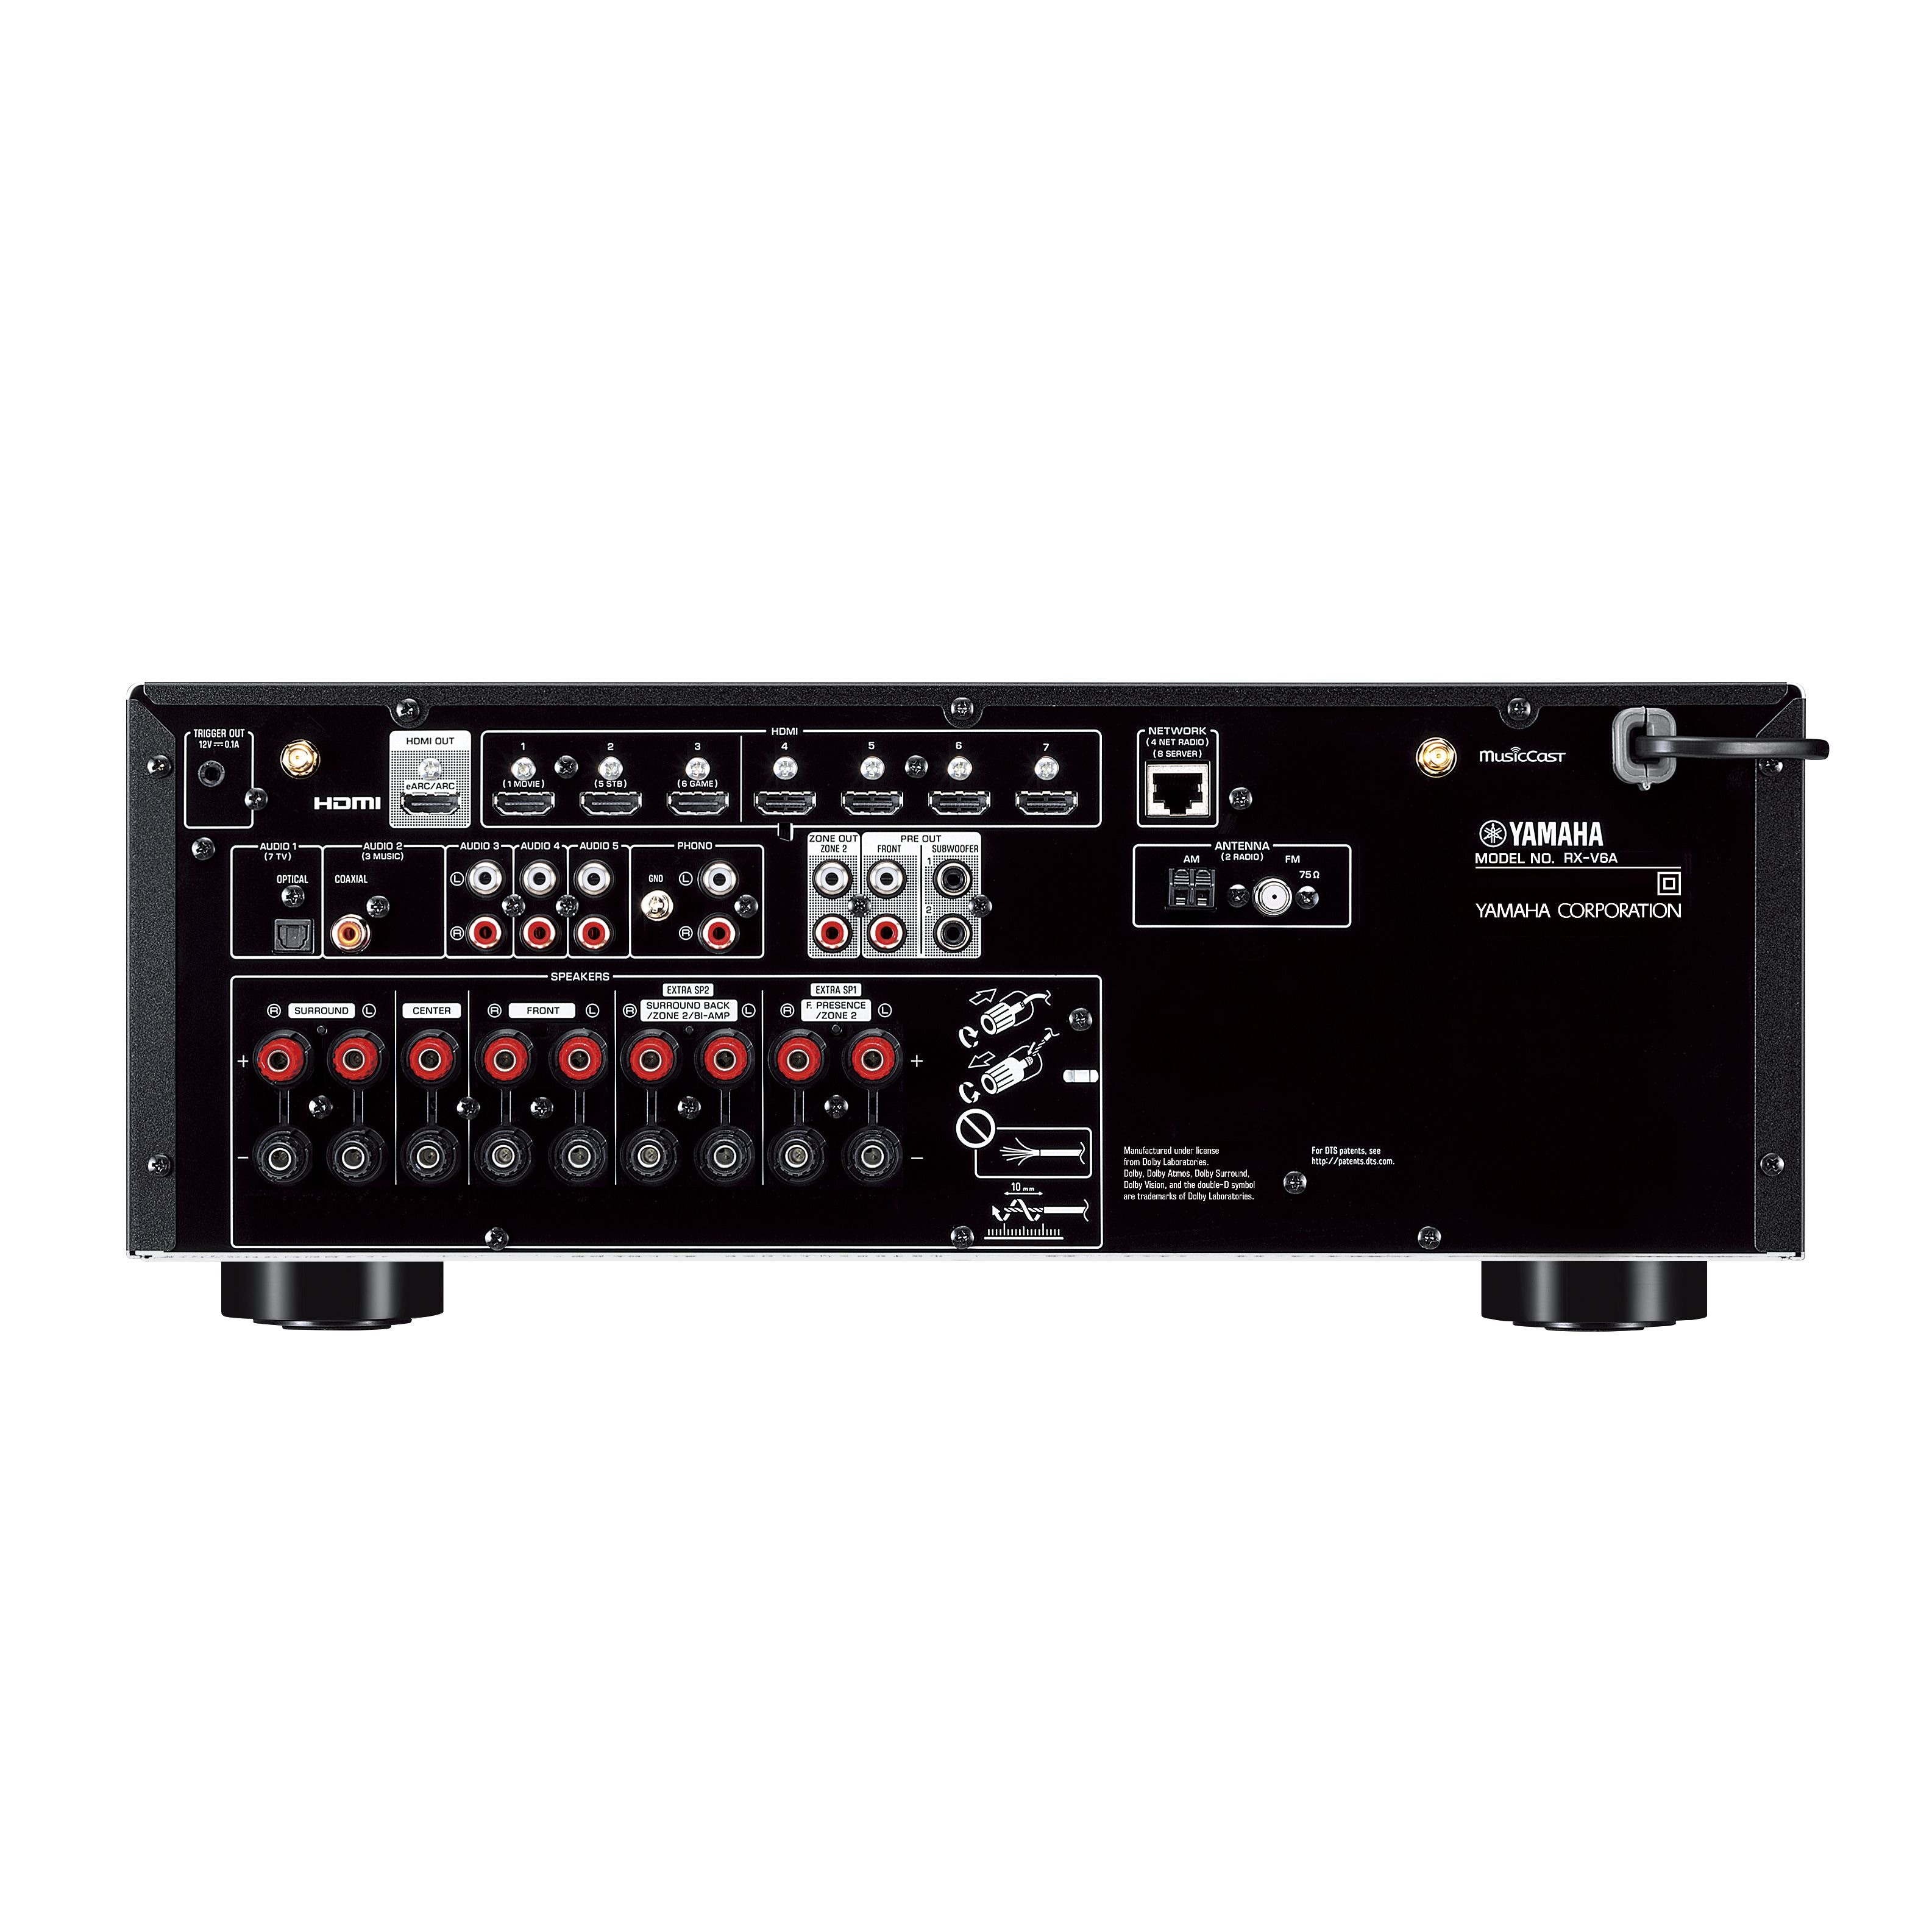 RX-V6A 7.2 channel 4K / 8K Dolby AV Receiver – Yamaha USA